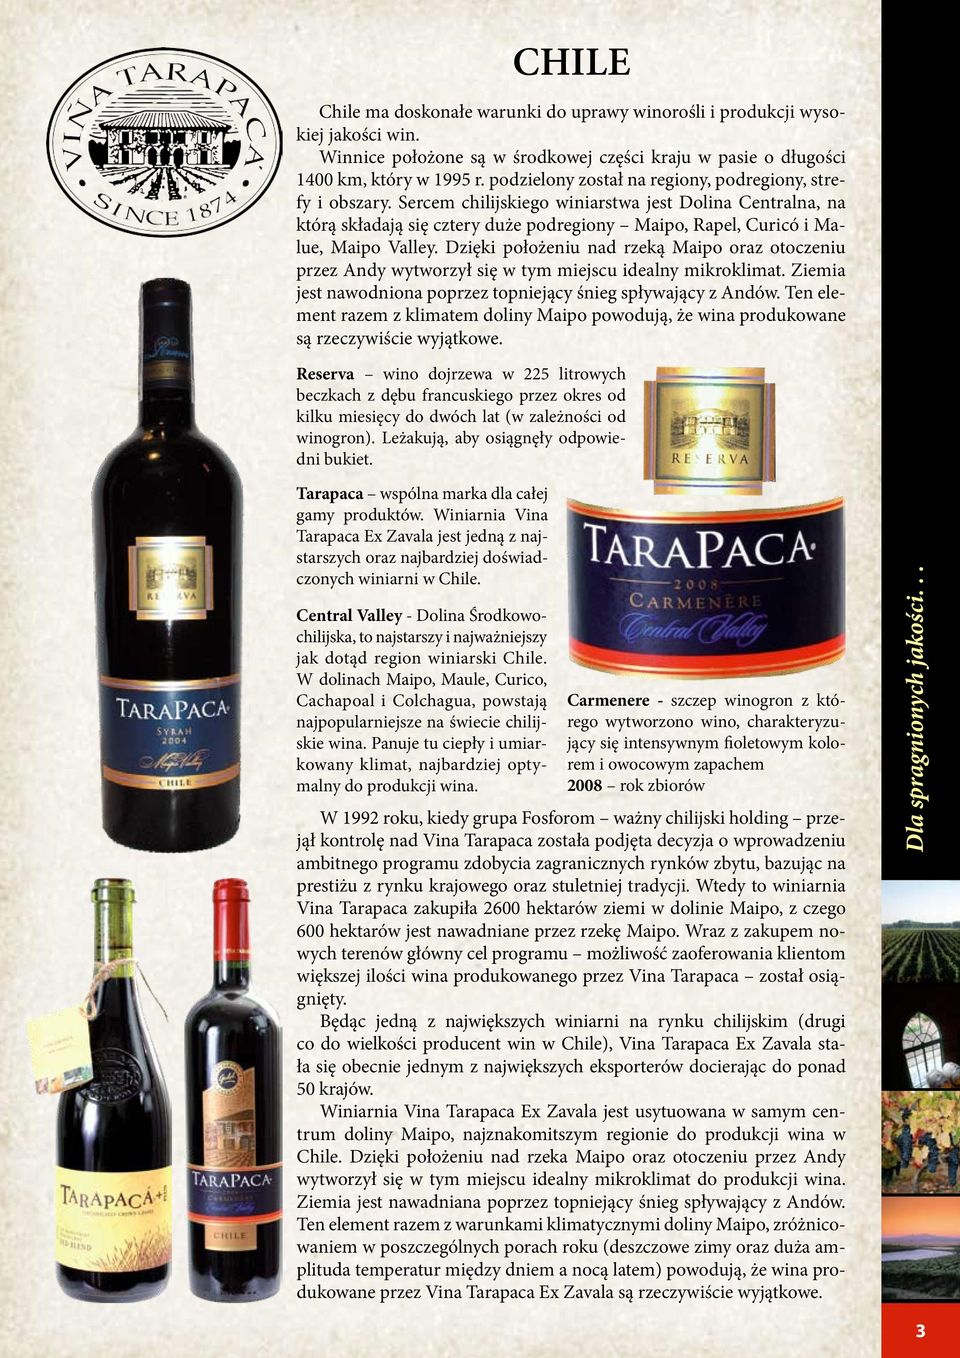 Sercem chilijskiego winiarstwa jest Dolina Centralna, na którą składają się cztery duże podregiony Maipo, Rapel, Curicó i Malue, Maipo Valley.